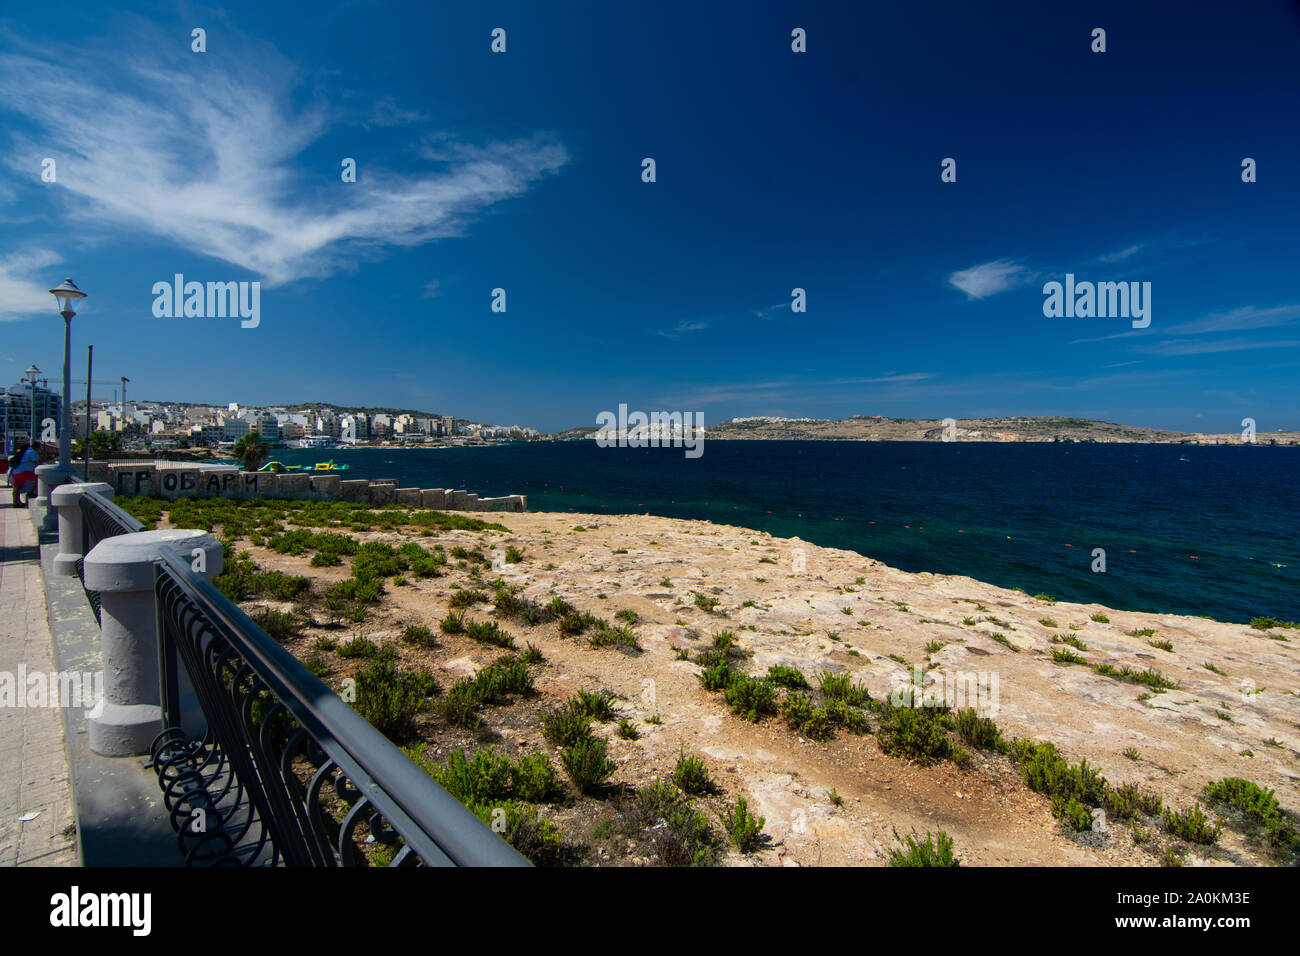 Overlooking the Sea at Qawra, Malta Stock Photo